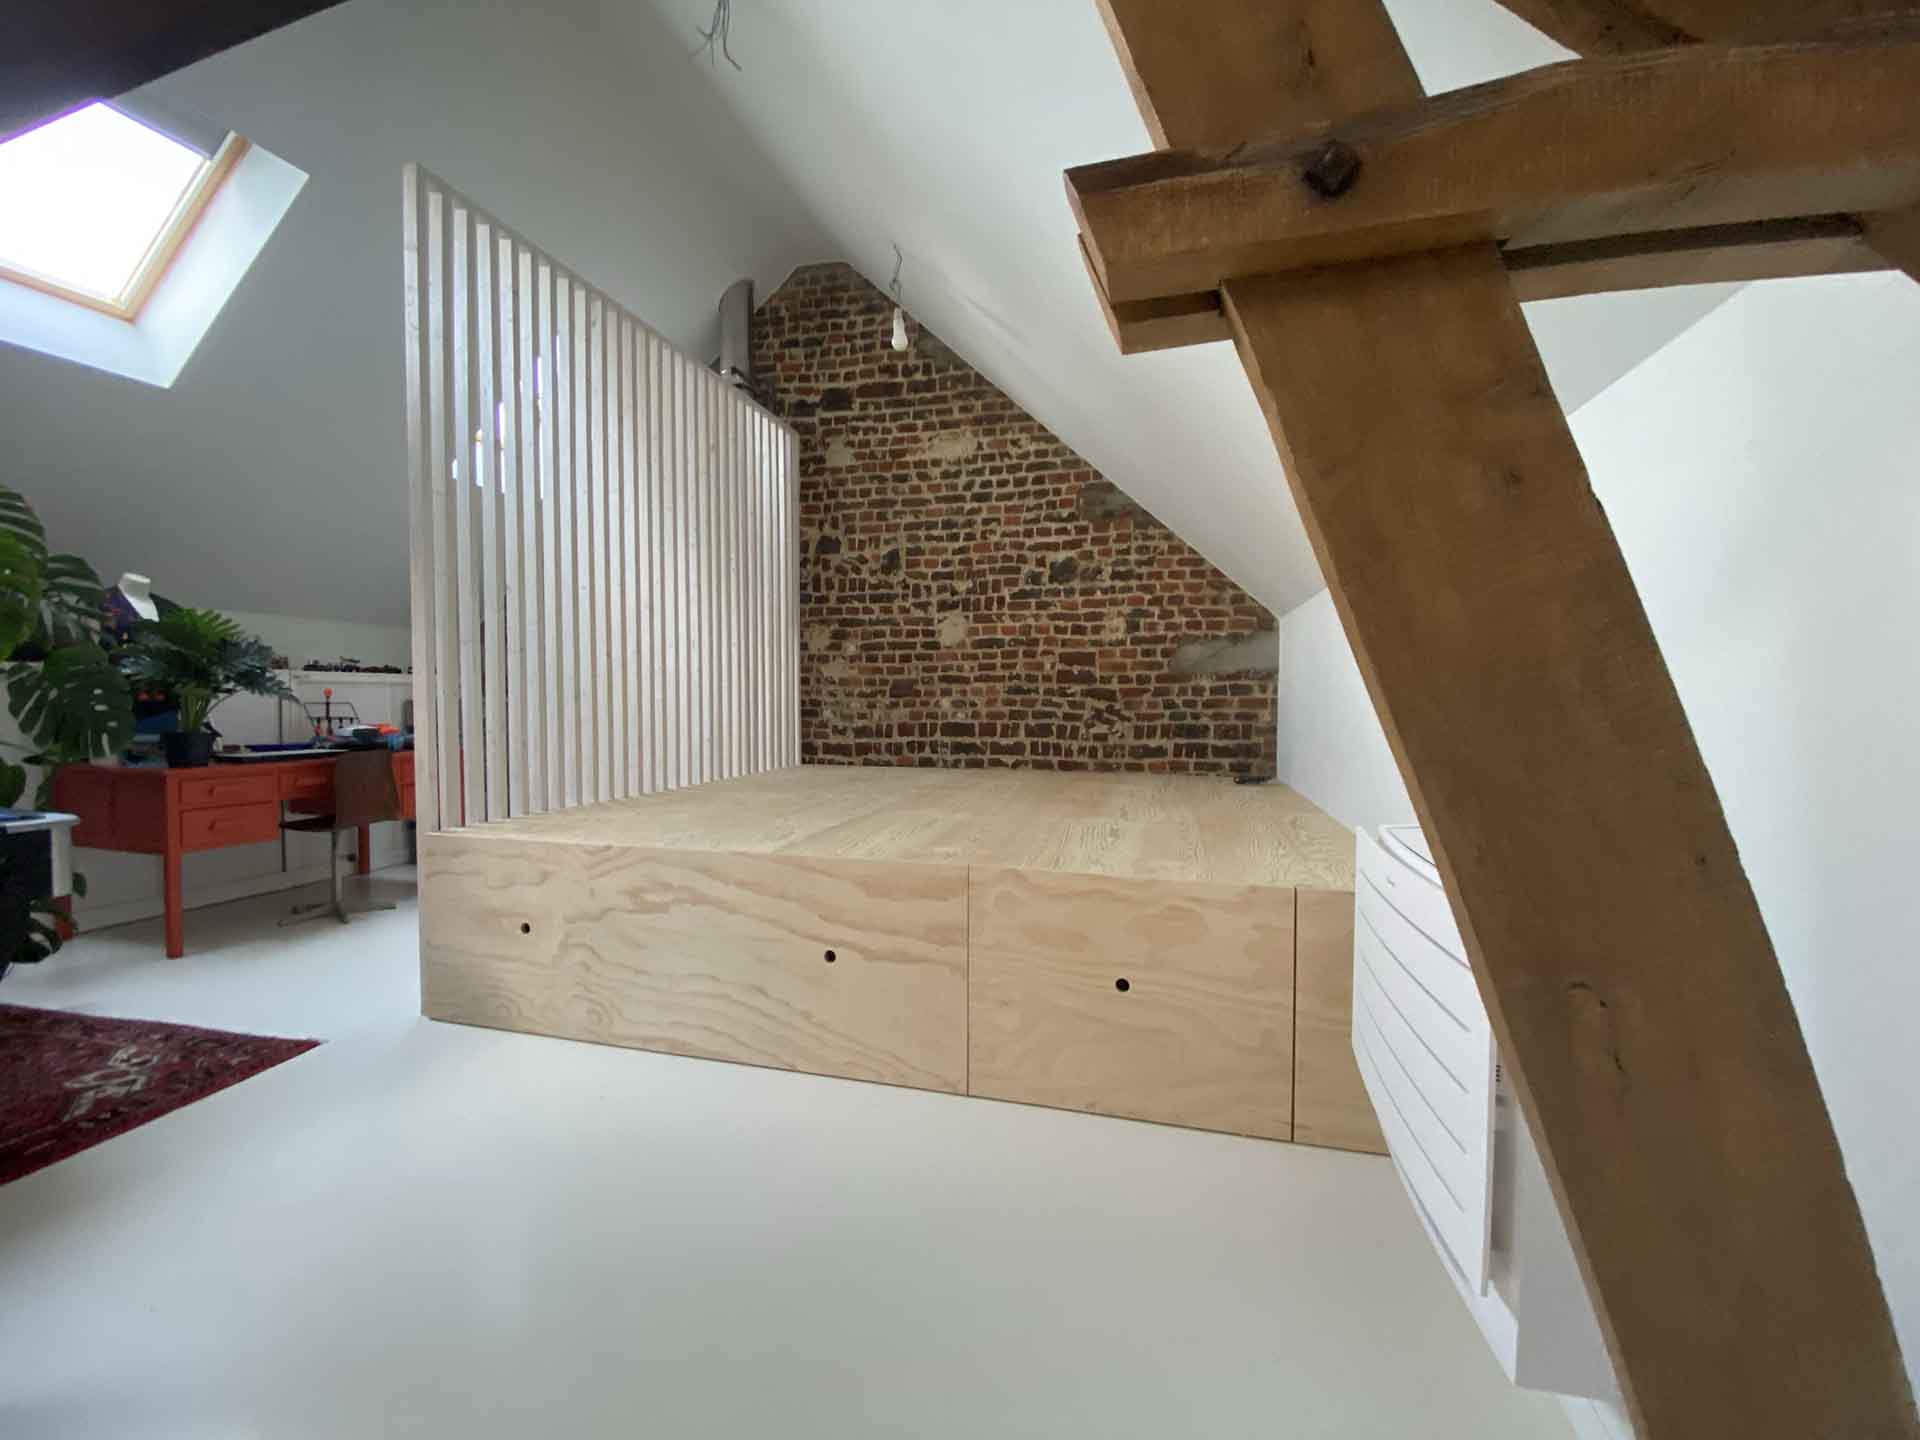 Slaapkamer met uitrolbaar bed | Woodz Design | Zander Steels